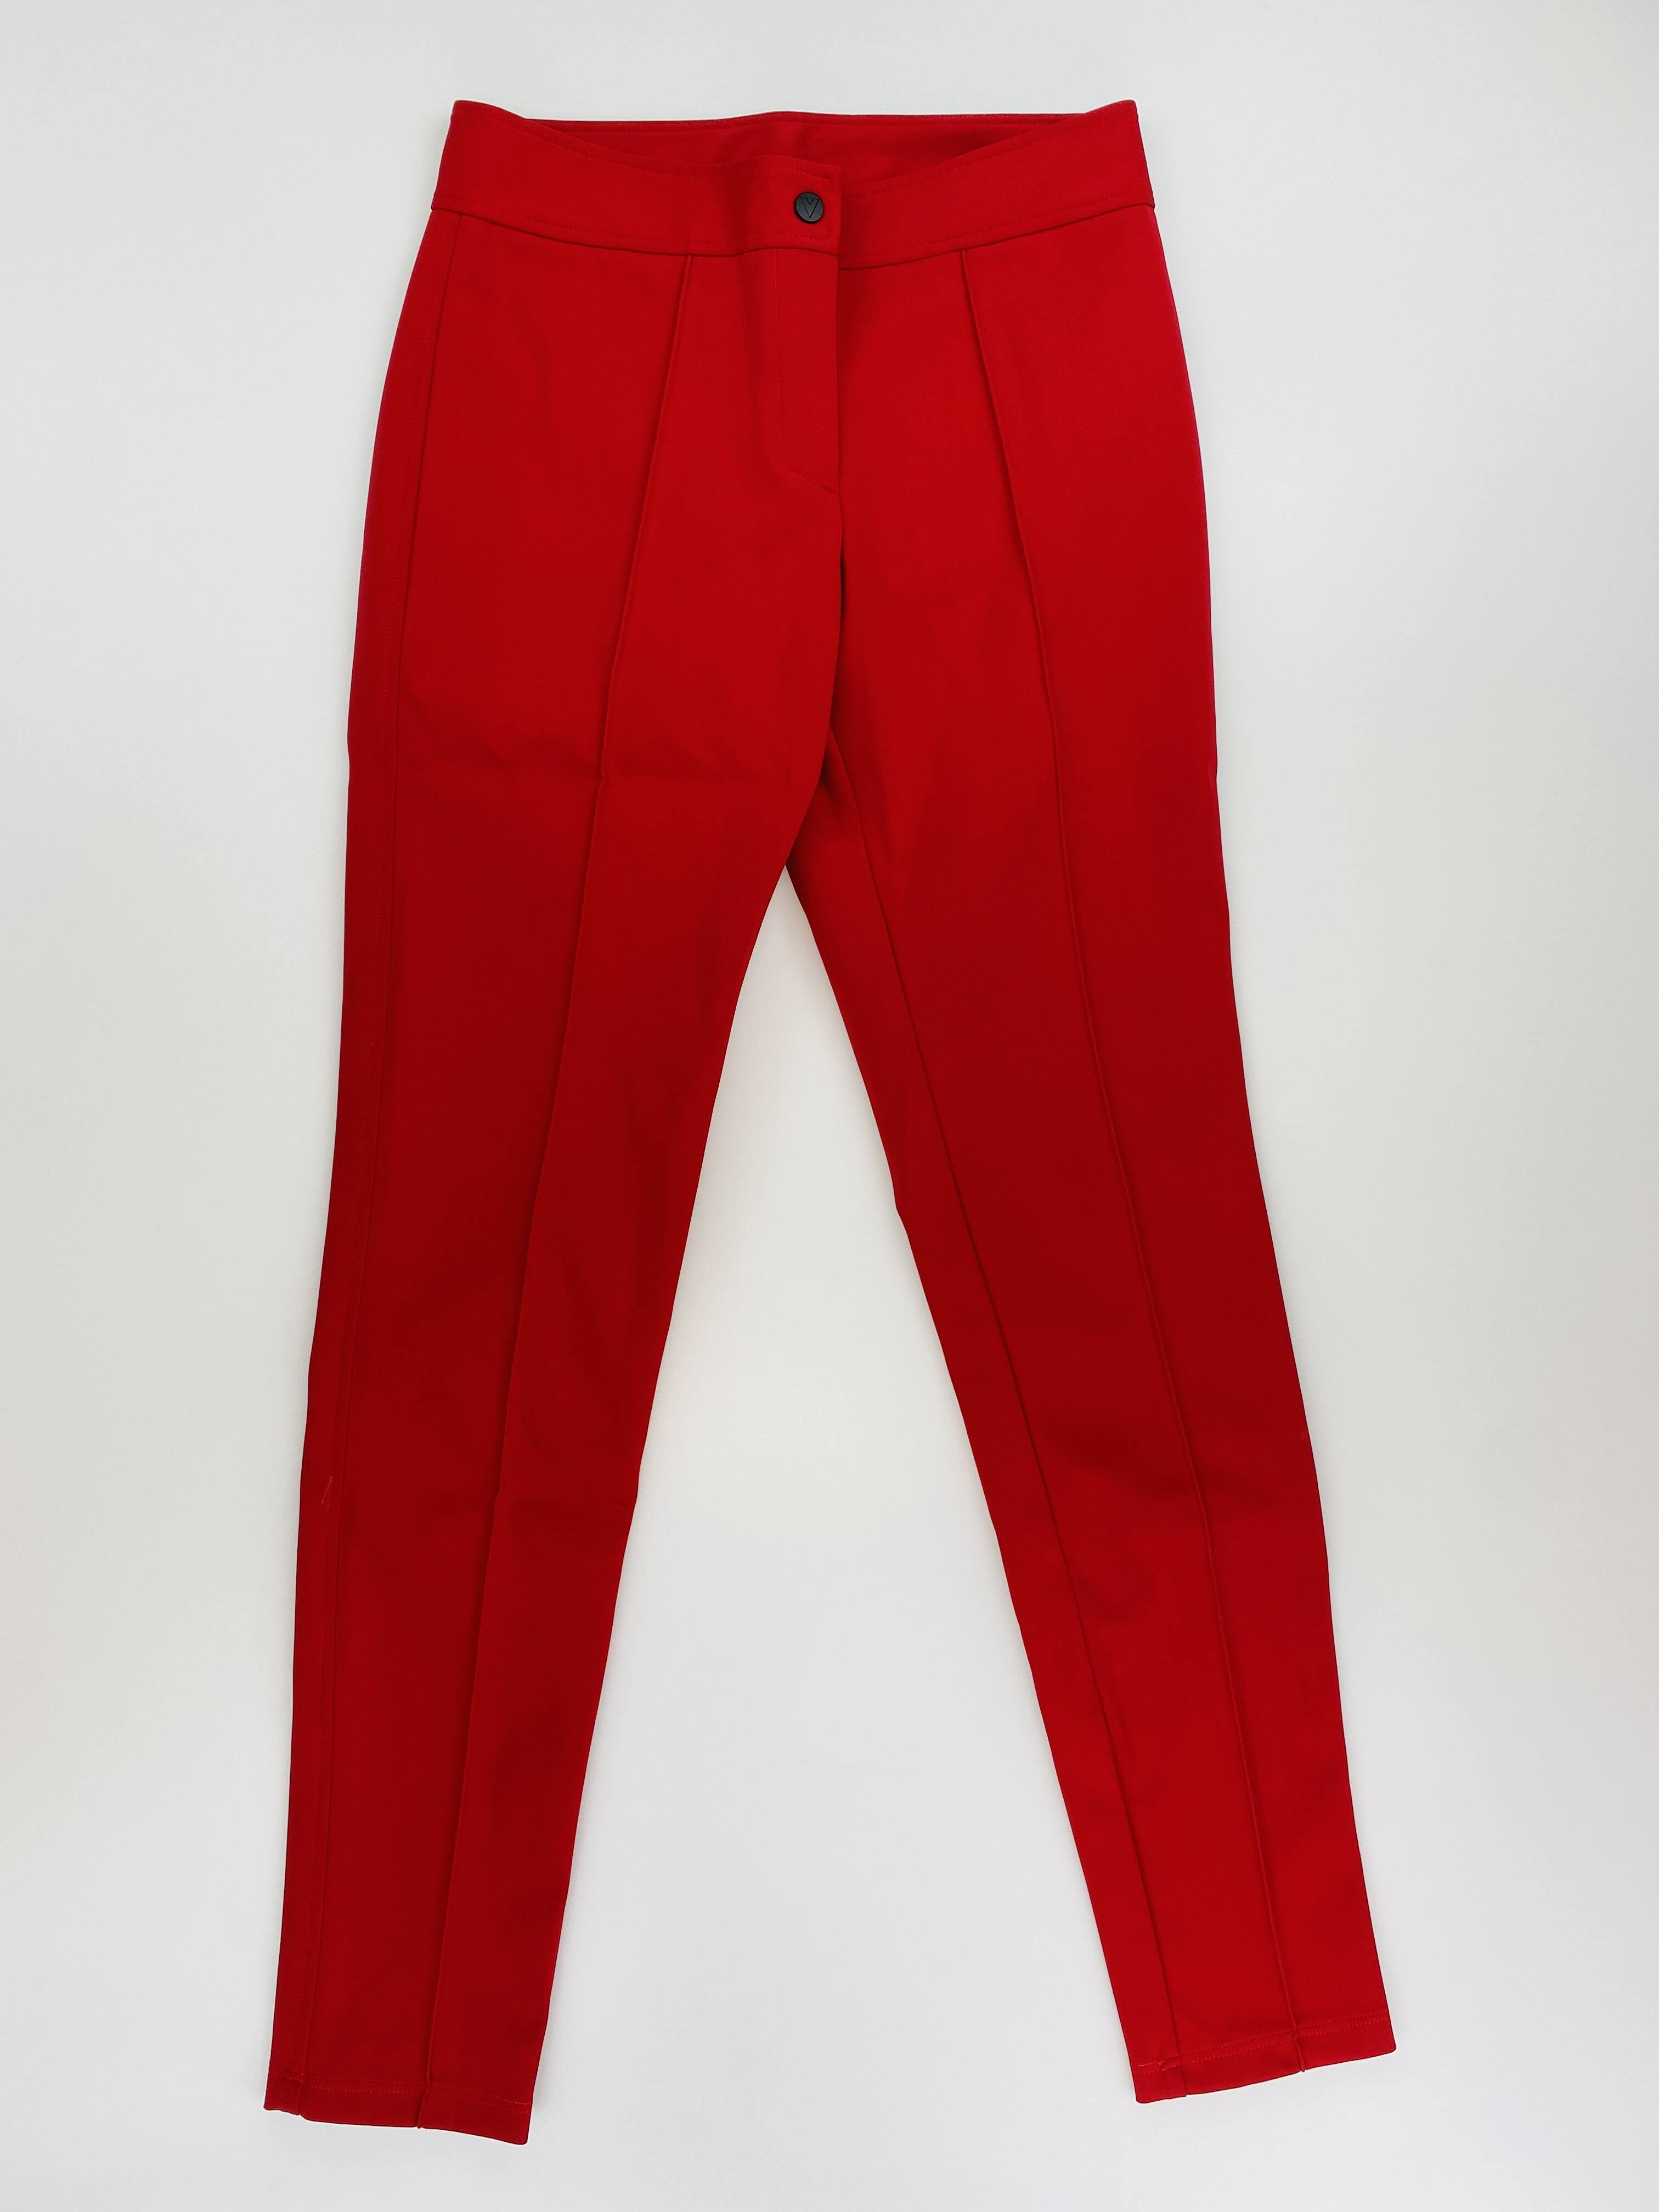 Vuarnet W'S Edith Pant - Segunda Mano Pantalones de esquí - Mujer - Rojo - S | Hardloop